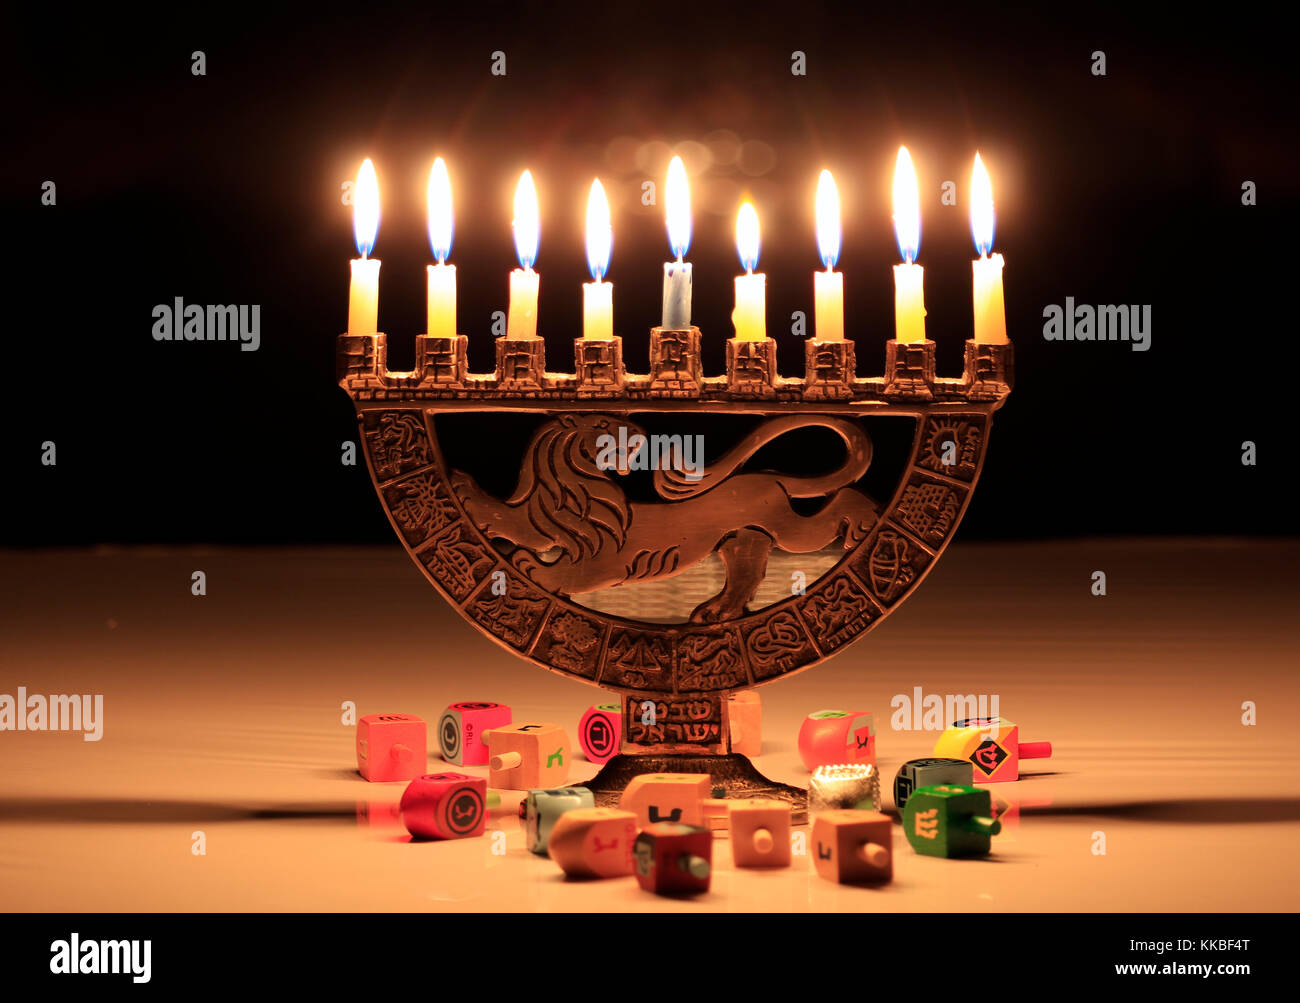 Hanukkah Menorah mit brennenden Kerzen auf dem Tisch sitzt; die Lichter spiegeln sich in den dunklen Fenster hinter Ihnen; dreidels auf dem Tisch vor o verstreut Stockfoto